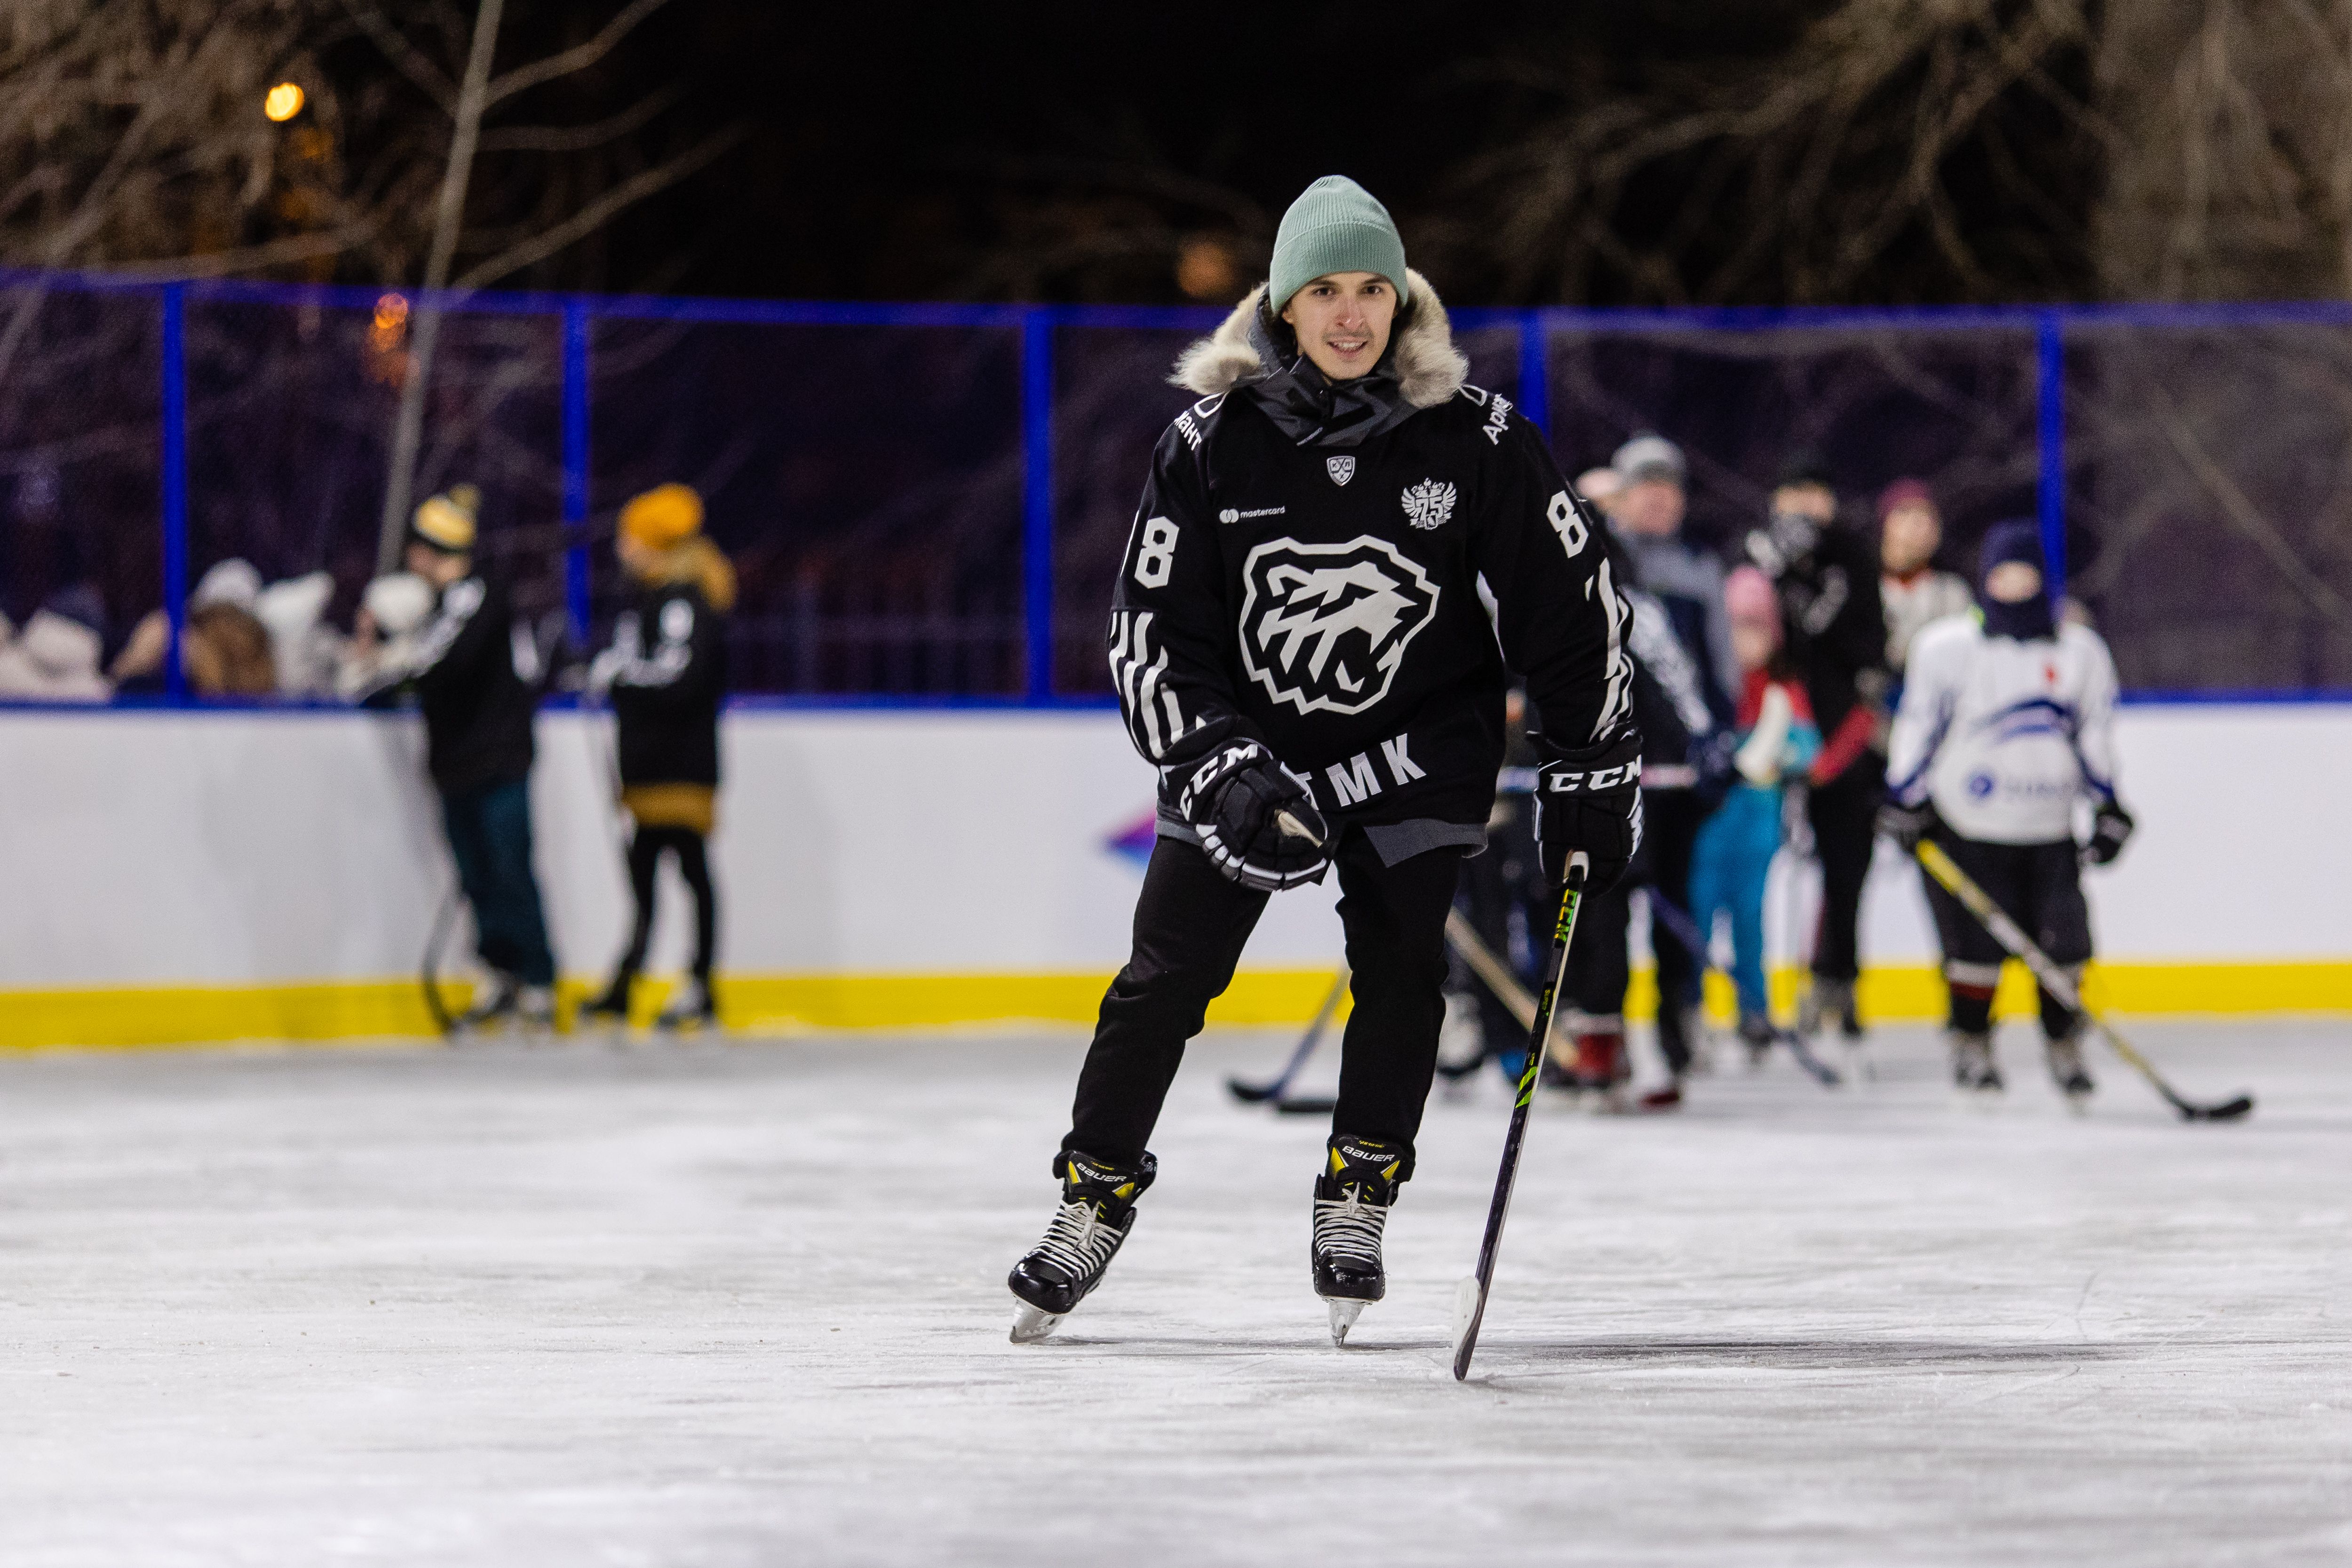 Все для зимнего отдыха: в Челябинске появилась новая хоккейная коробка